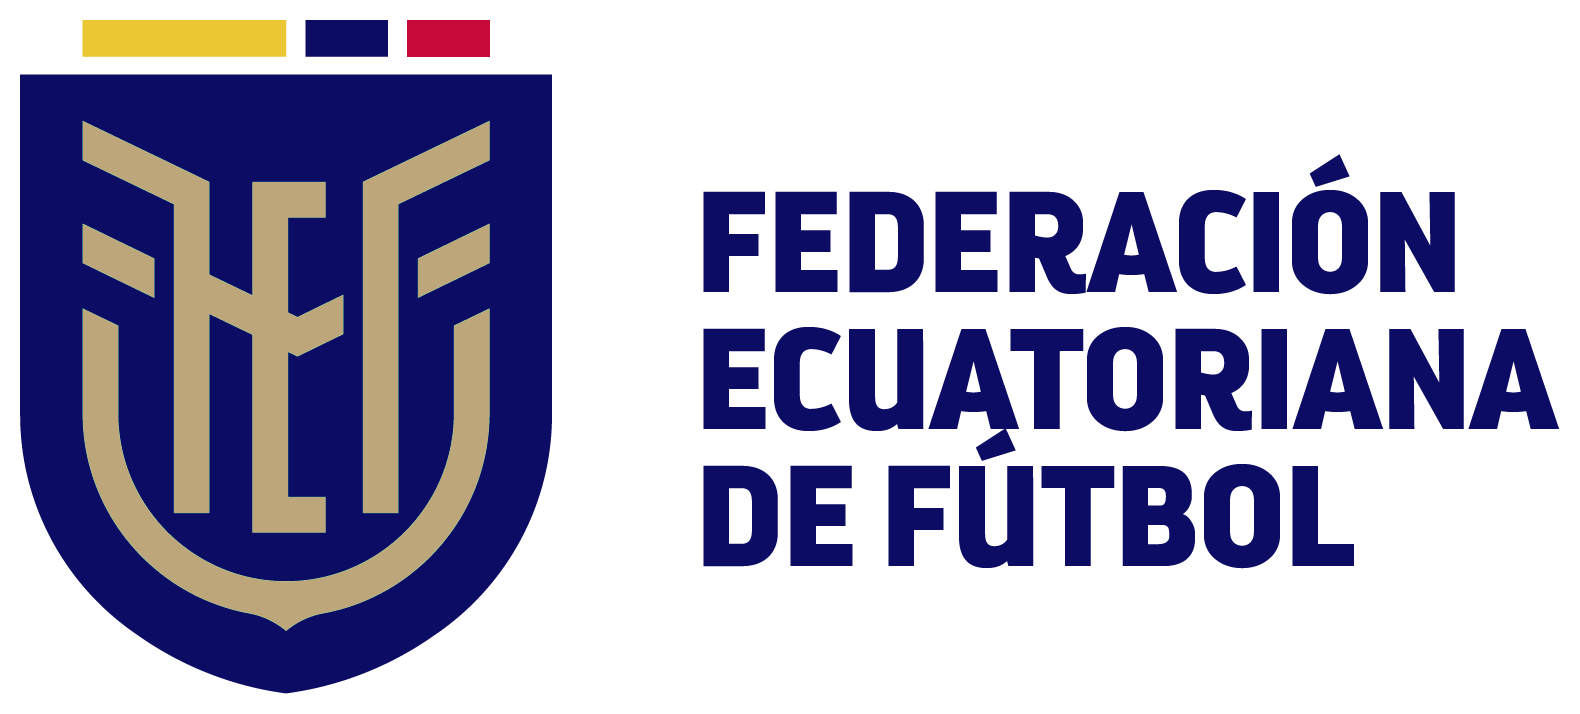 New Logo for Federación Ecuatoriana de Fútbol